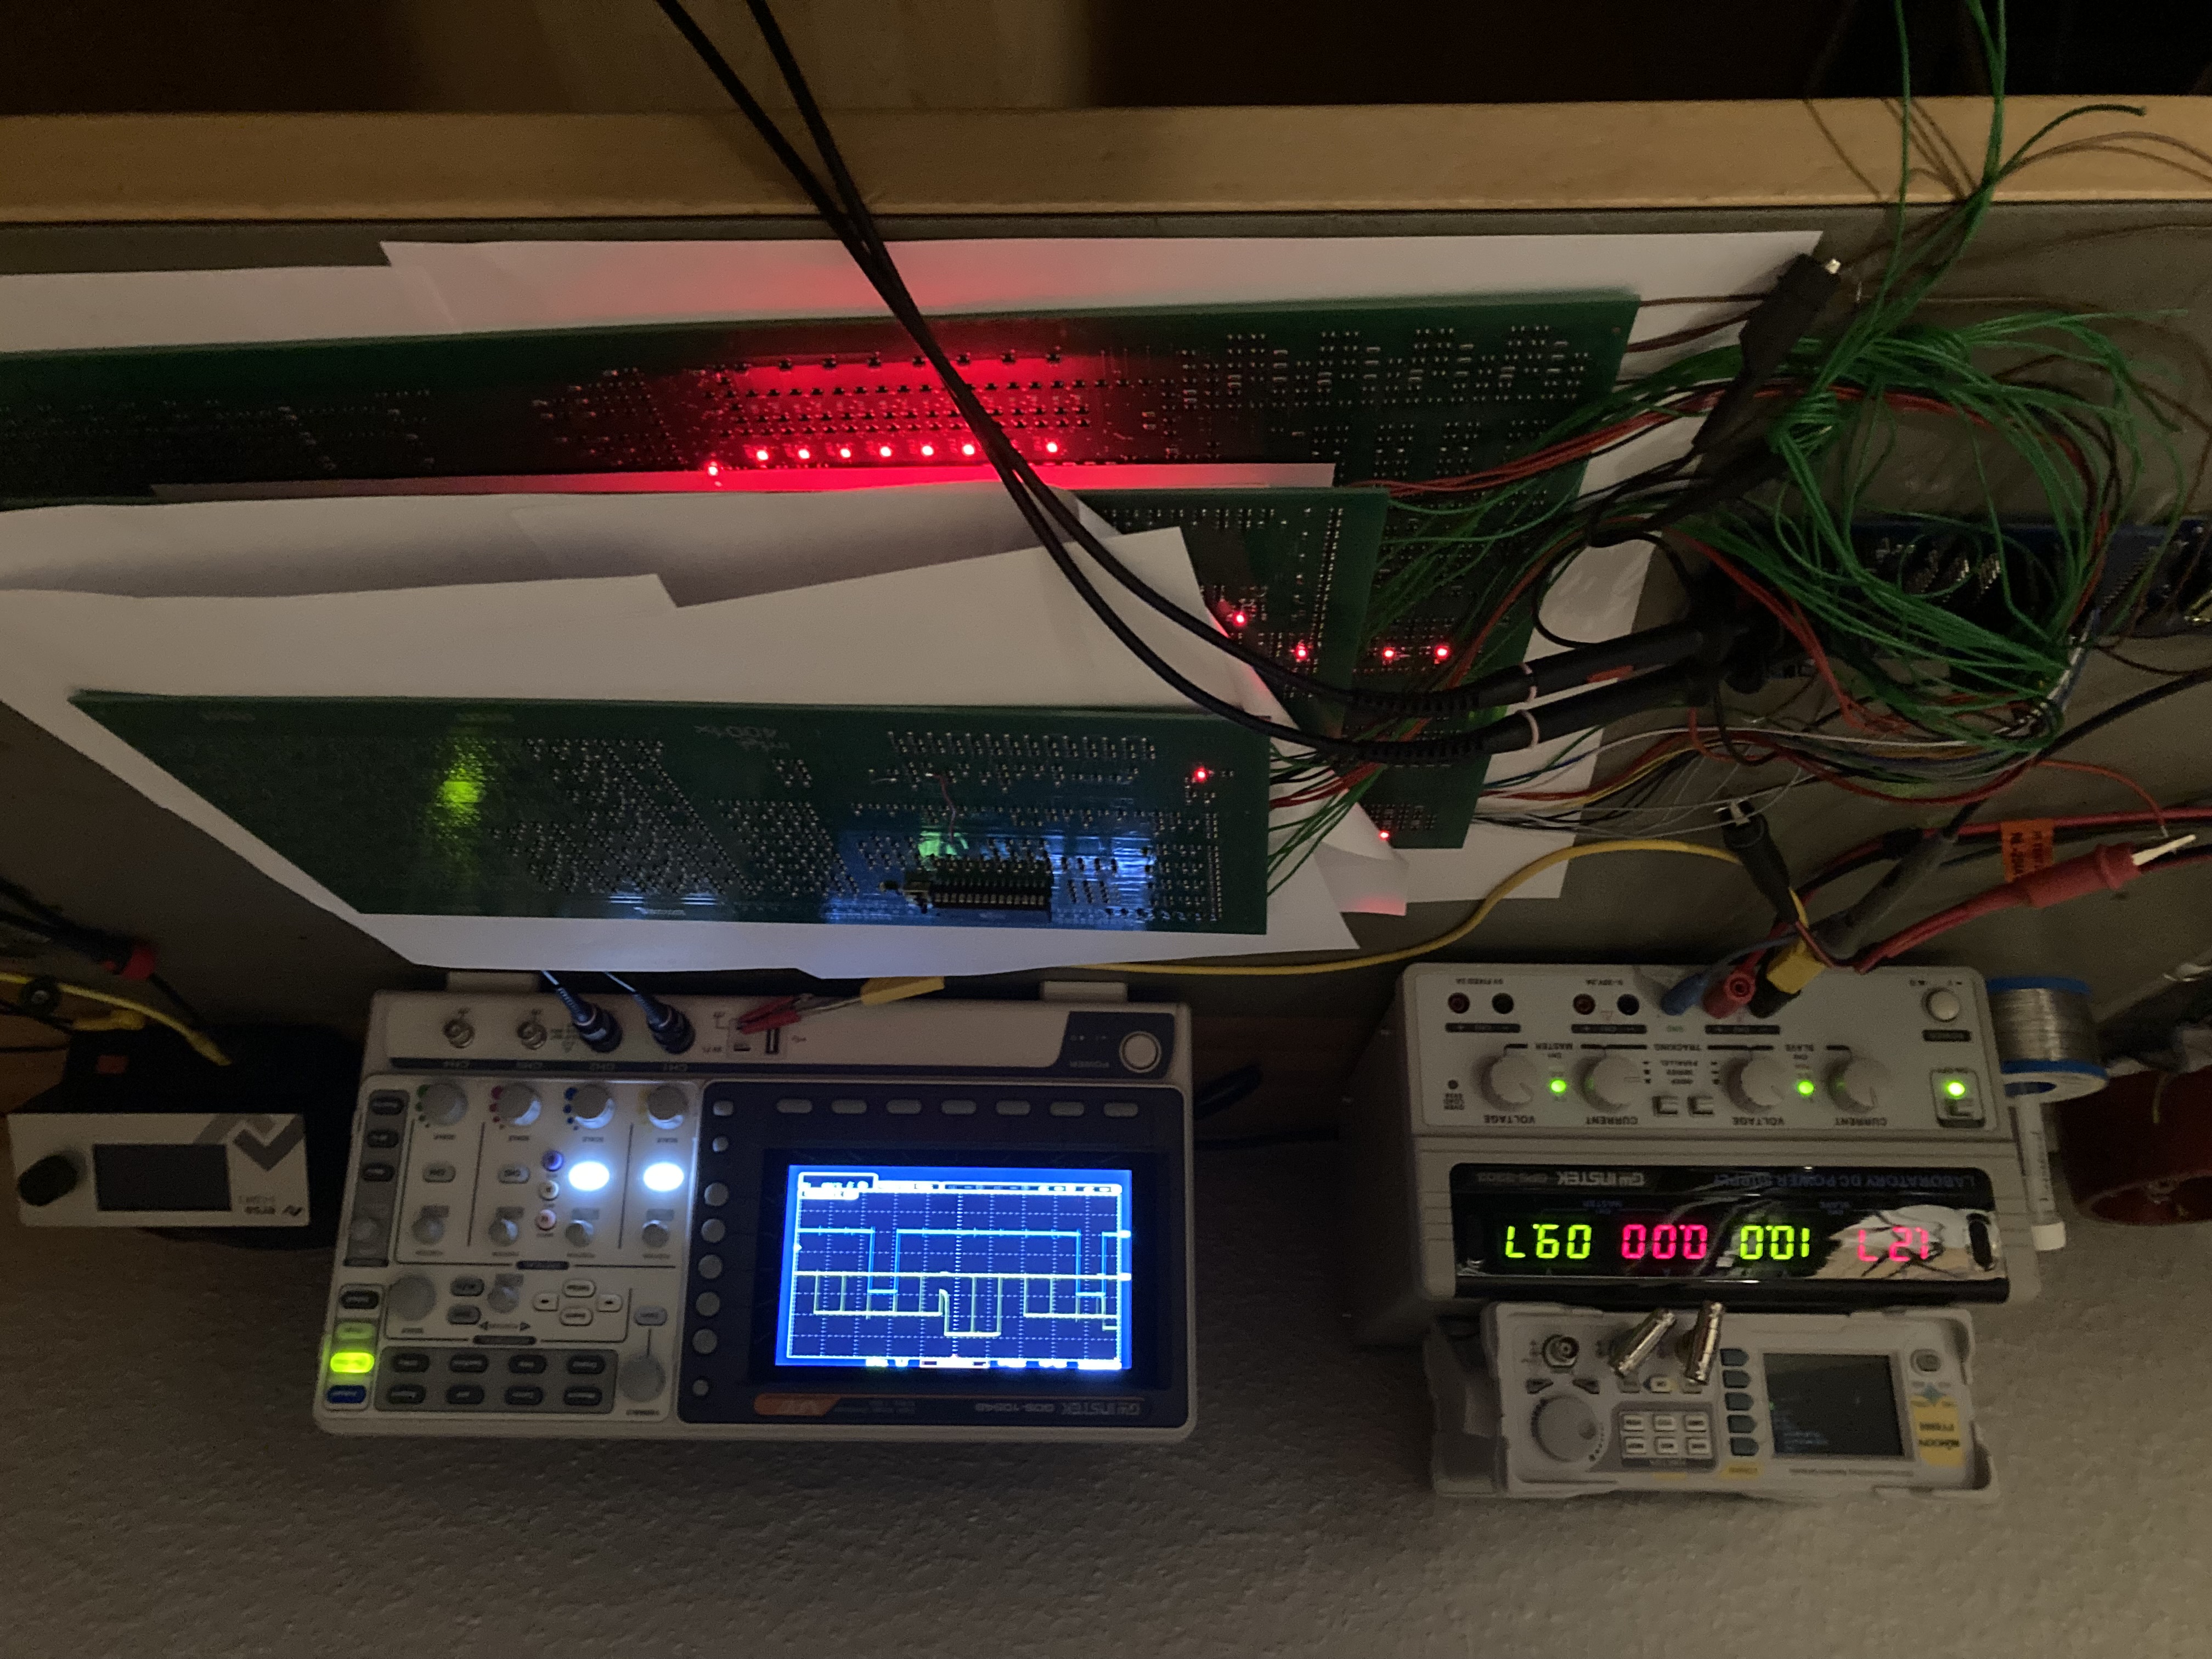 Klaus’ 4004,4002,4001x PCBs all turned on